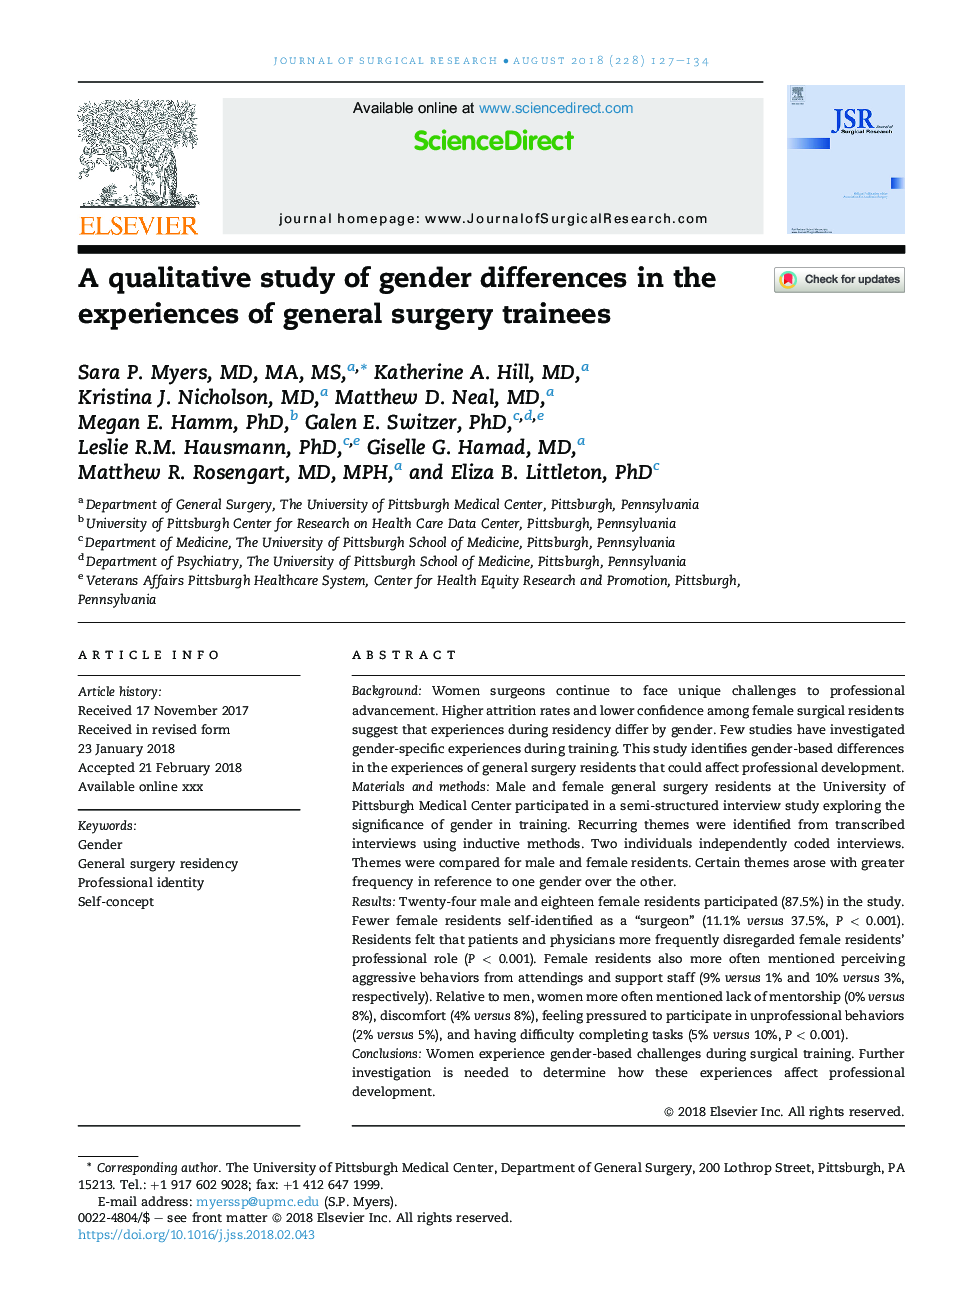 یک مطالعه کیفی تفاوت های جنسیتی در تجربیات کارآموزان جراحی عمومی 